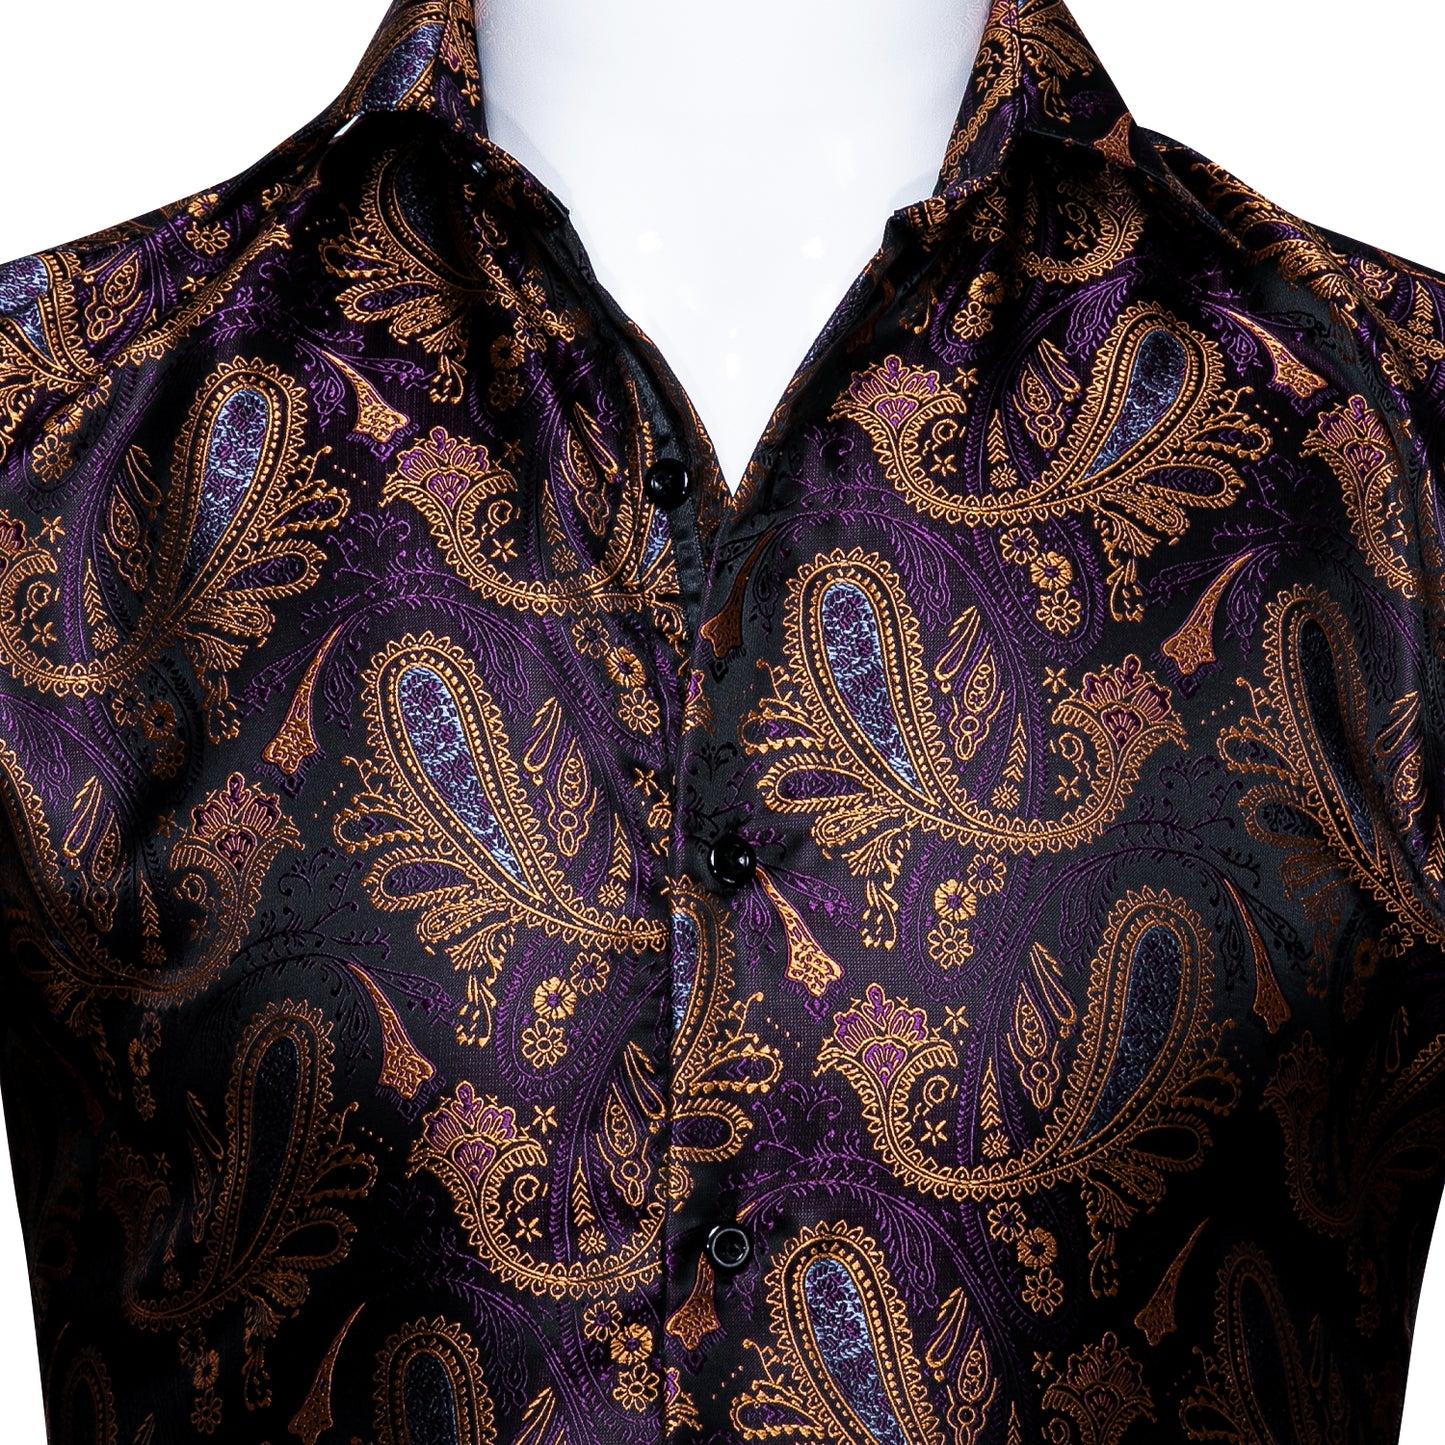 Novelty Silky Shirt - Royal Paisley